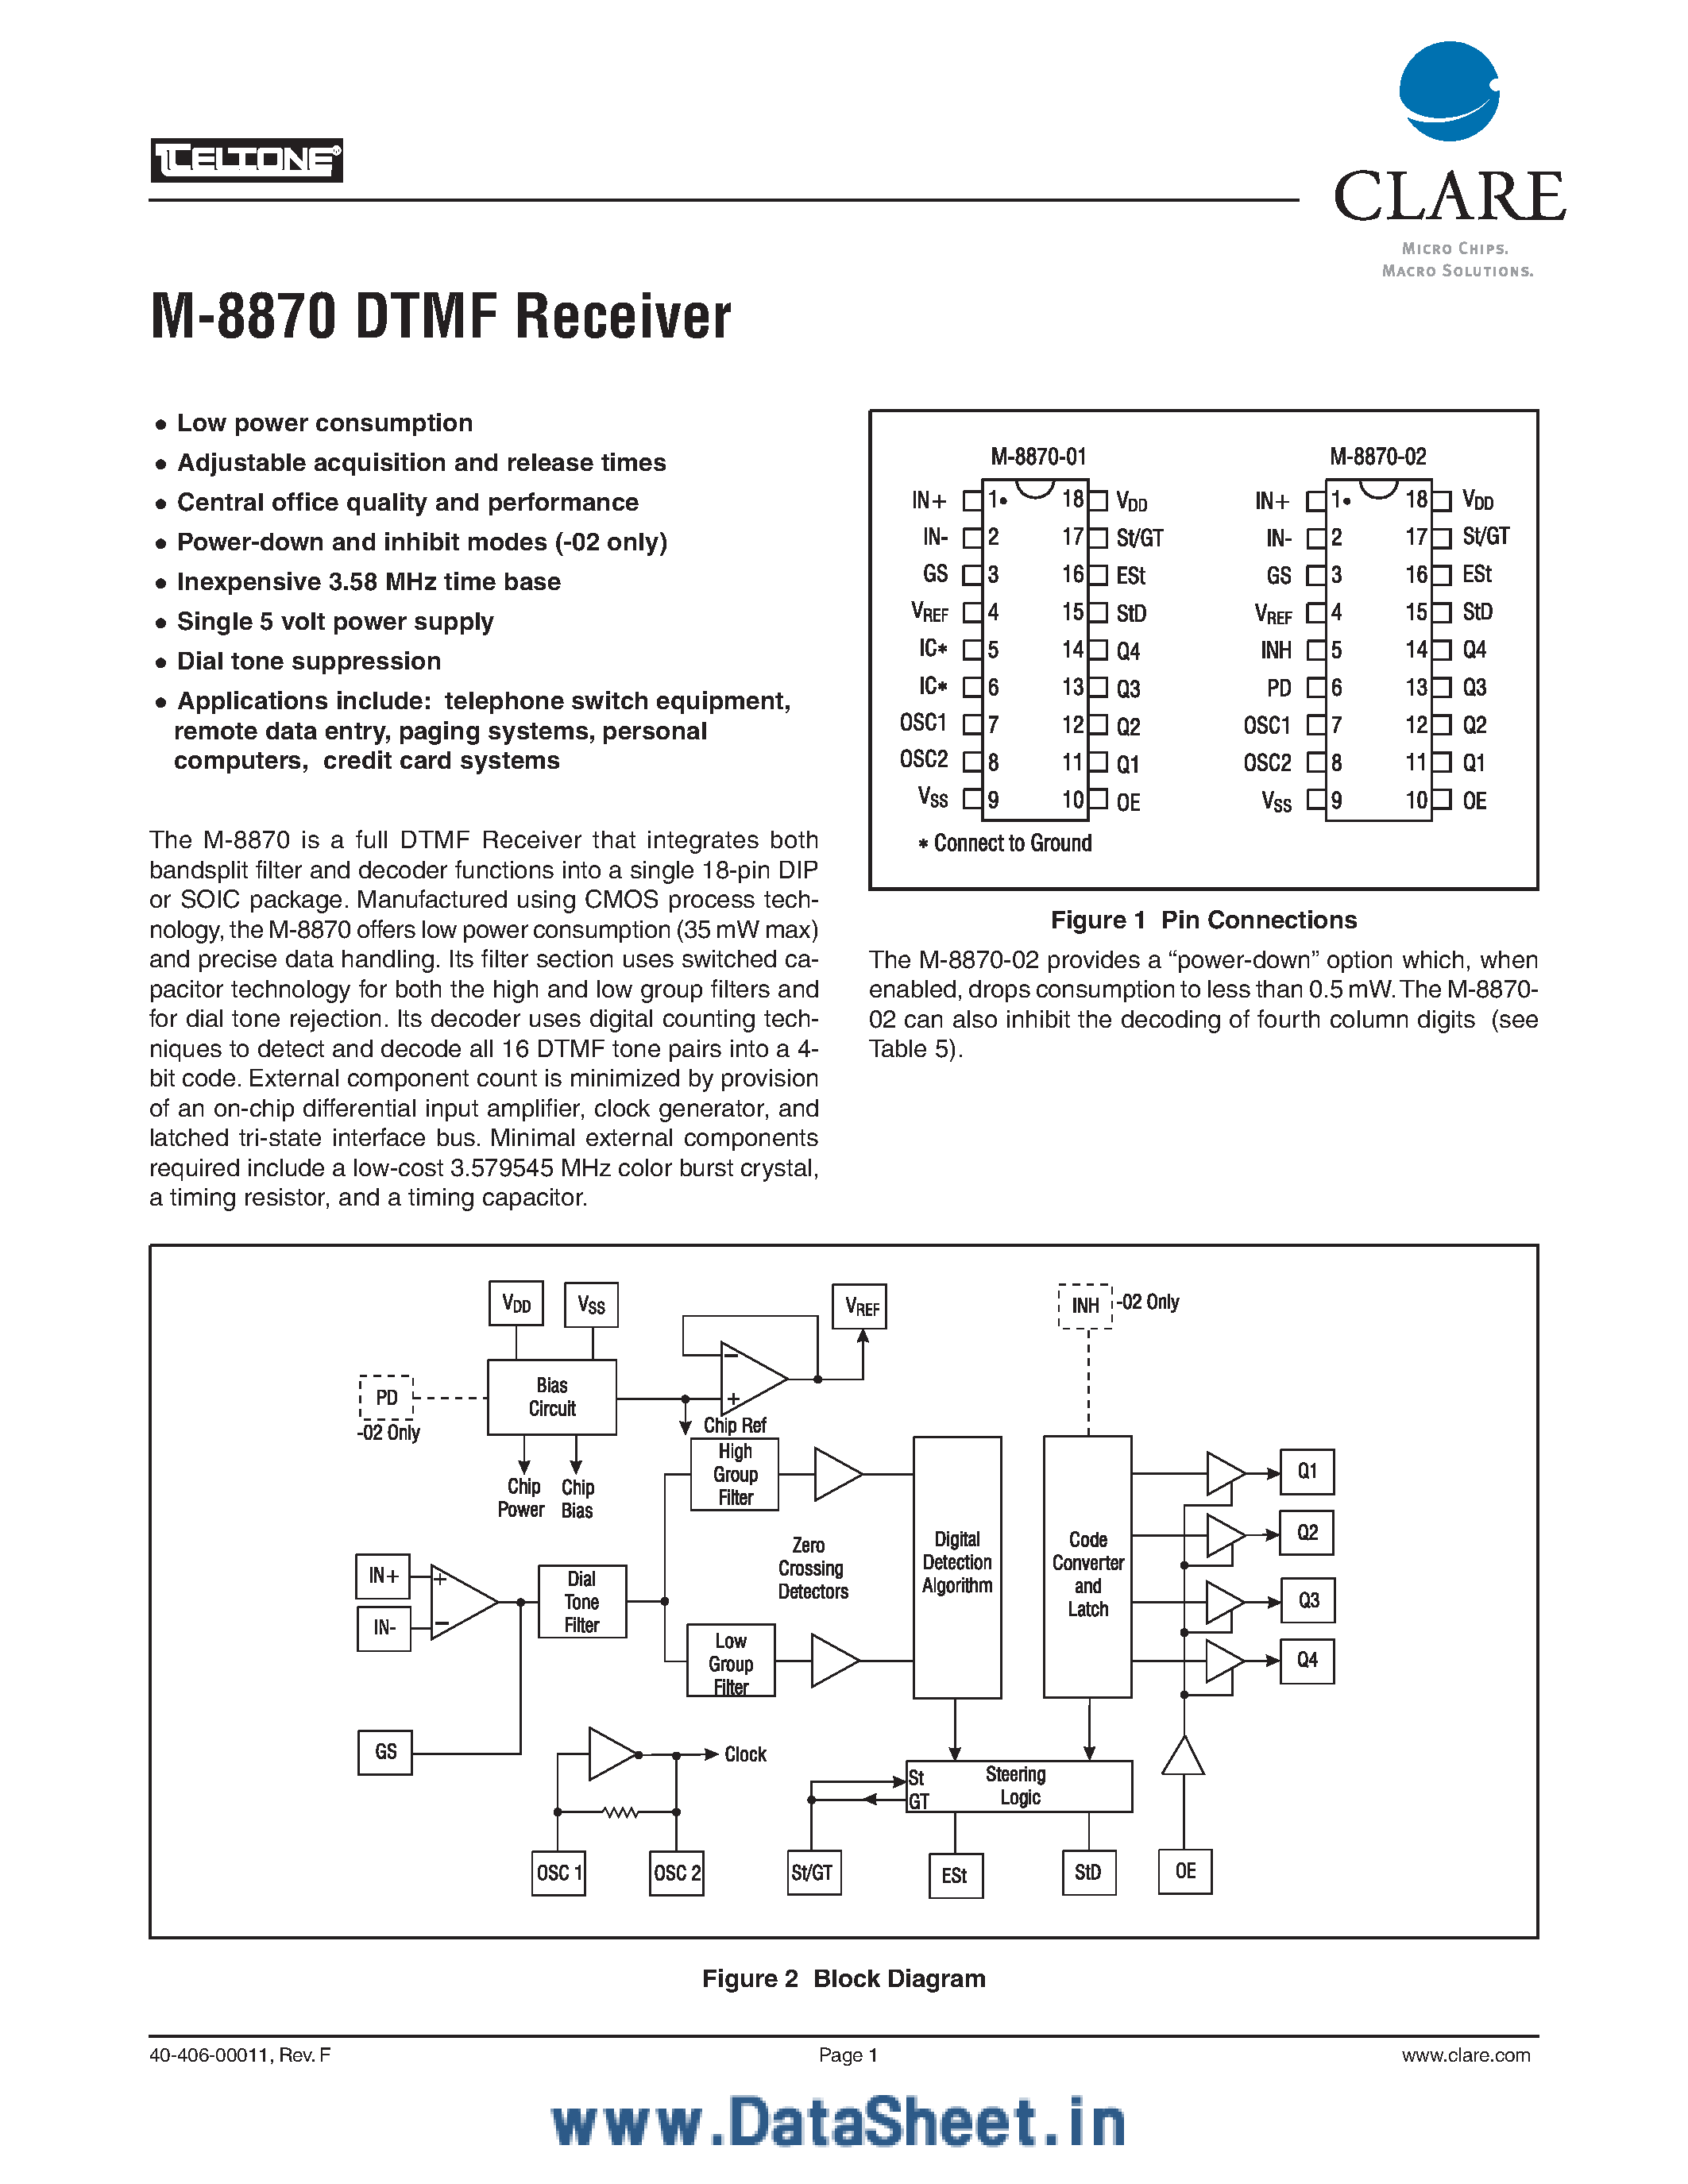 Даташит M-8870 - DTMF Receiver страница 1